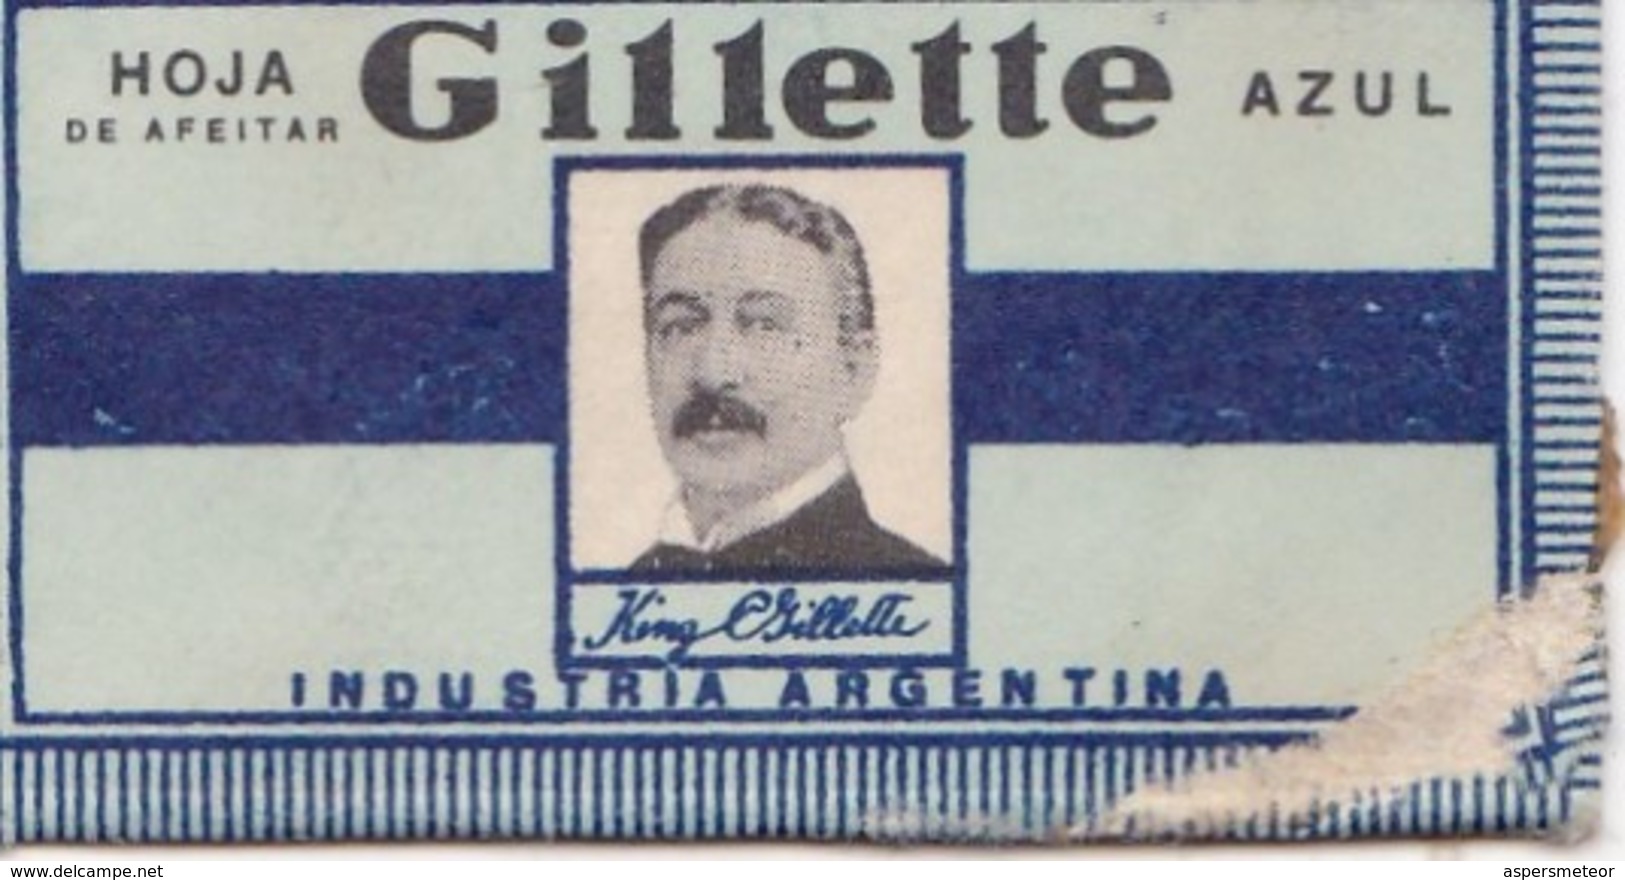 GILLETTE AZUL, INDUSTRIA ARGENTINA. RAZOR BLADE LAME DE RAISOR HOJA DE AFEITAR. CIRCA 1940s-BLEUP - Lames De Rasoir